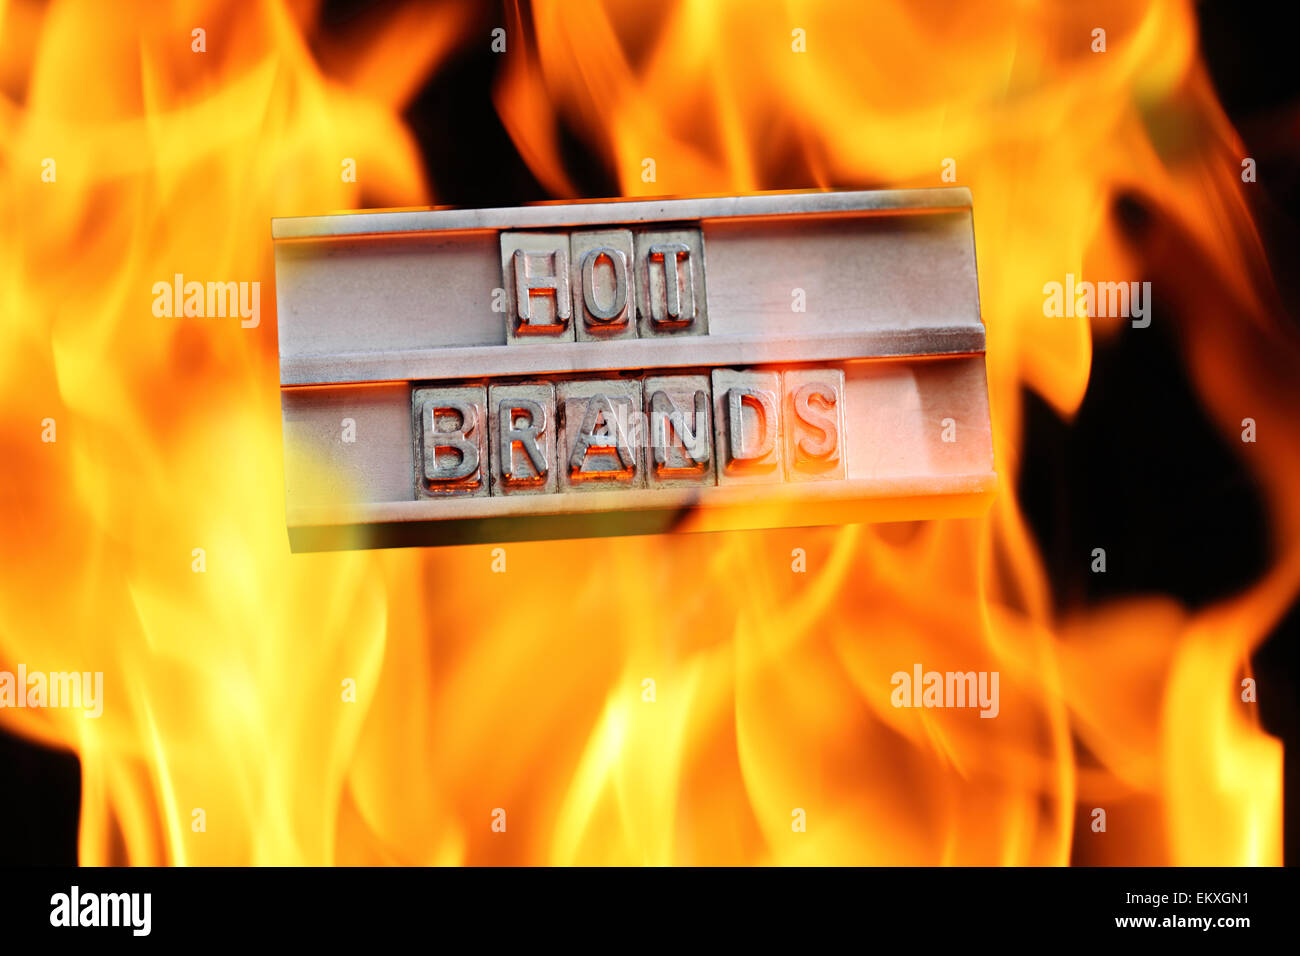 Un 'branding di ferro " con le parole " HOT BRANDS" avvolto in fiamme. (L'immagine è stata girata per leggere correttamente) Foto Stock